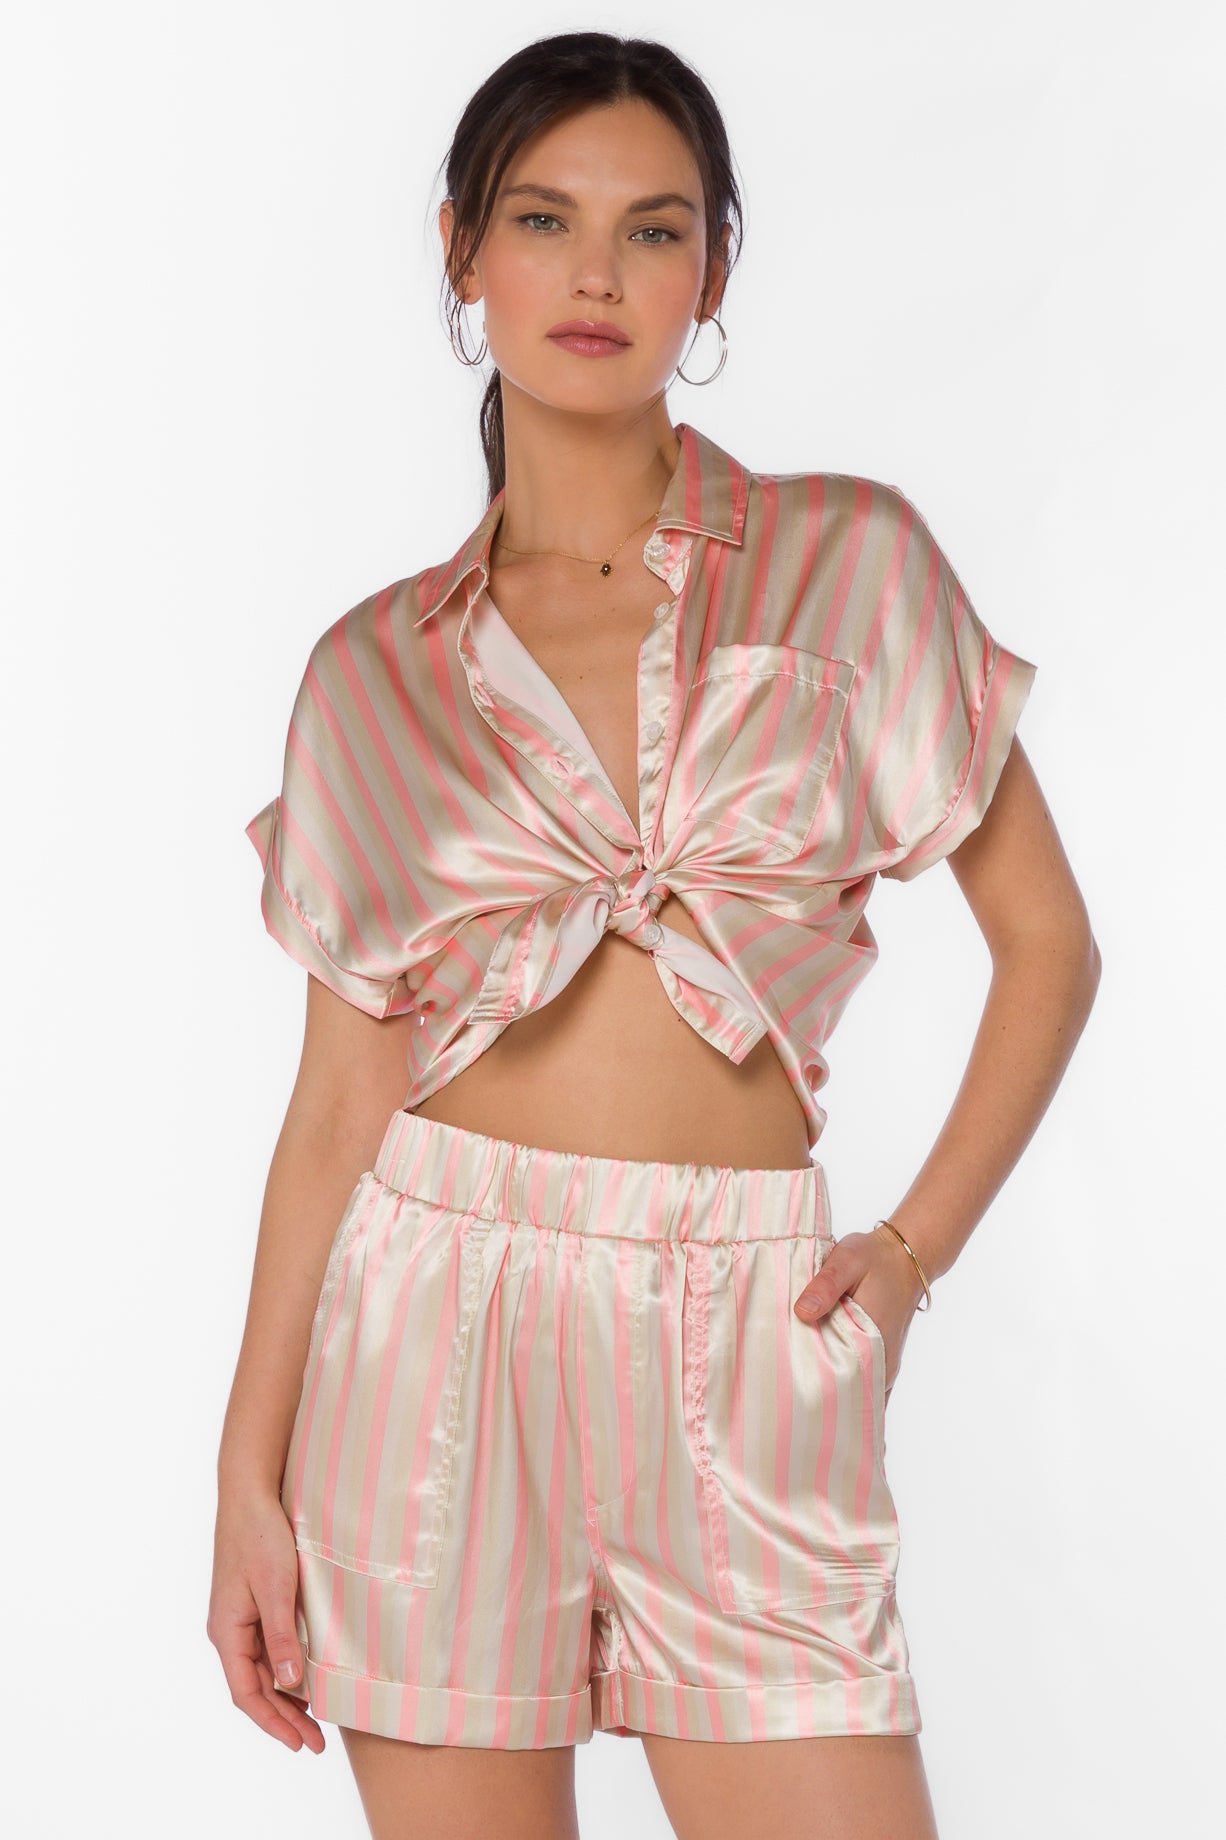 Marni Coral Stripe Shirt - Tops - Velvet Heart Clothing